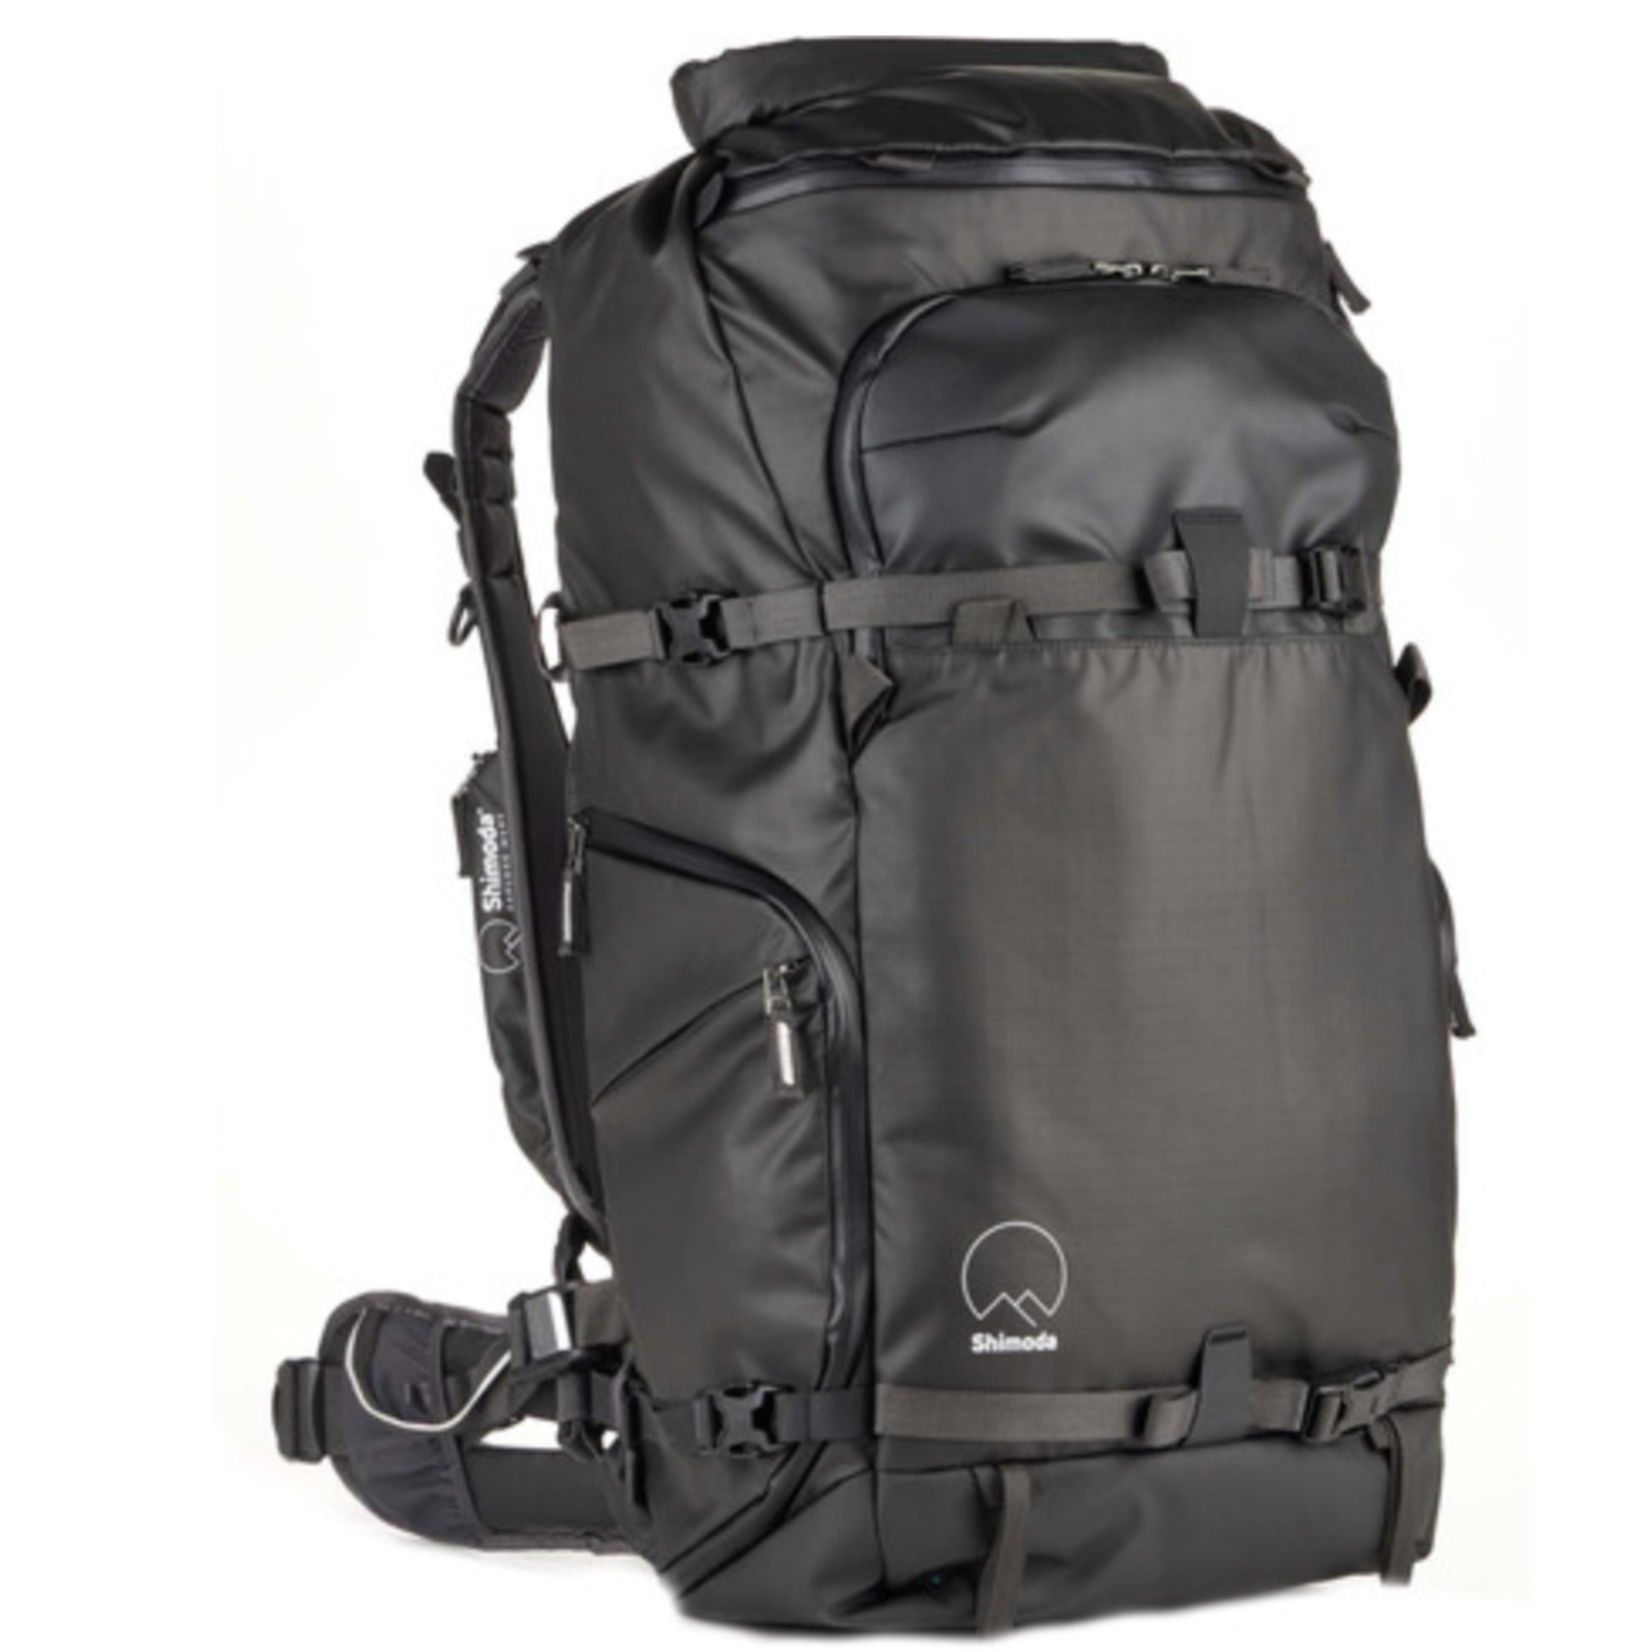 Shimoda Shimoda Action X50 v2 Backpack - Black - Bag Only